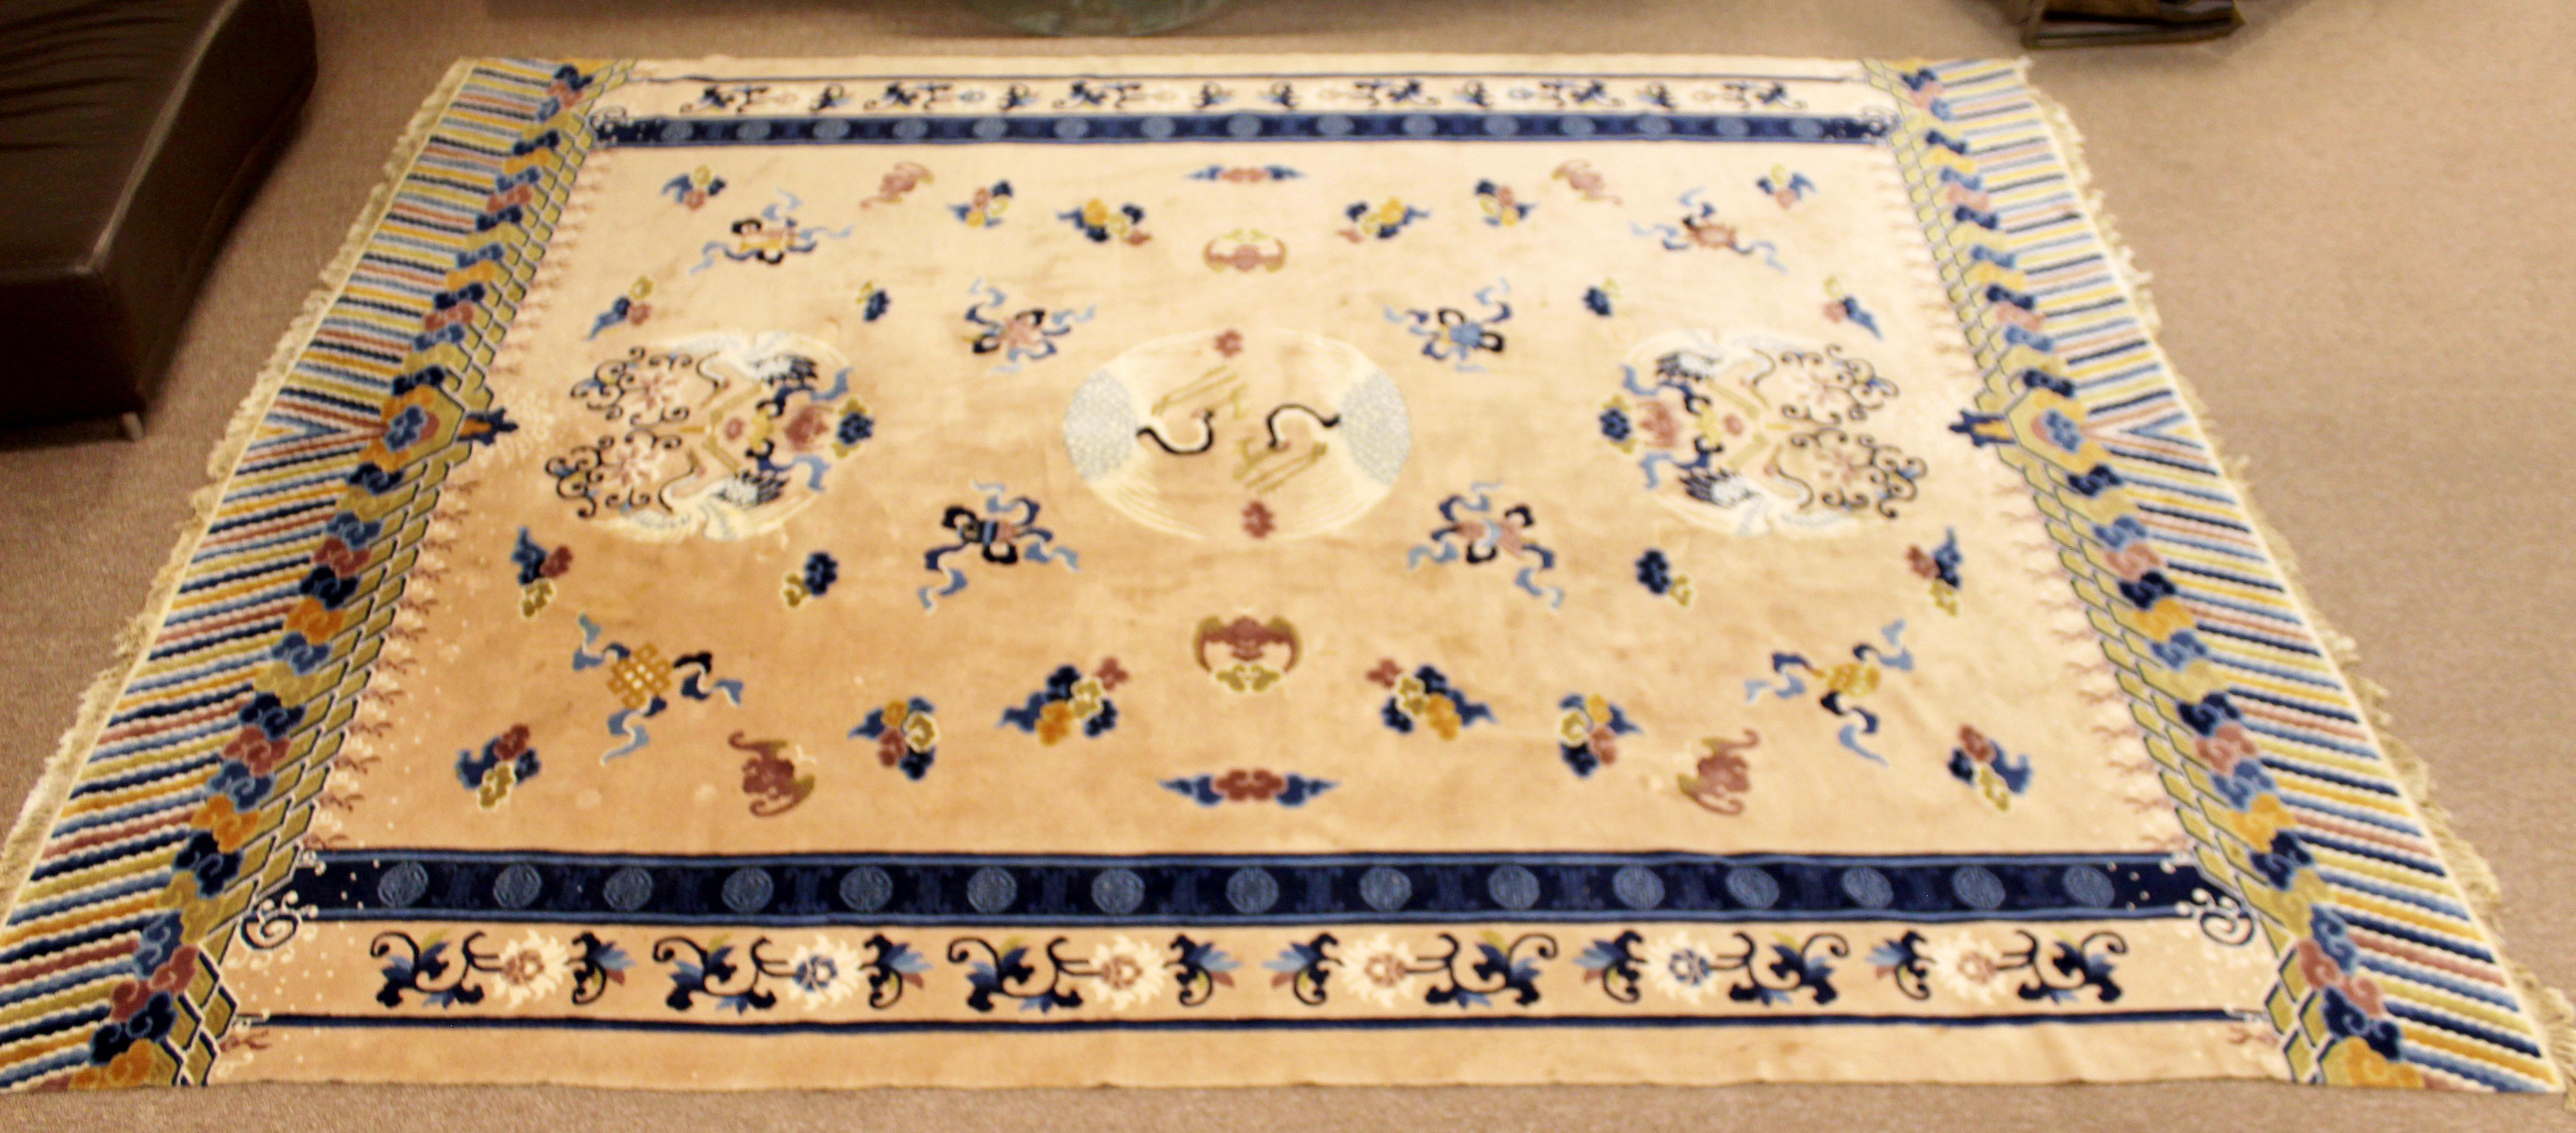 Wir bieten Ihnen einen exquisiten, großen, rechteckigen Teppich aus einer Seidenmischung mit Schwanenmuster. In ausgezeichnetem Zustand. Die Abmessungen sind 145